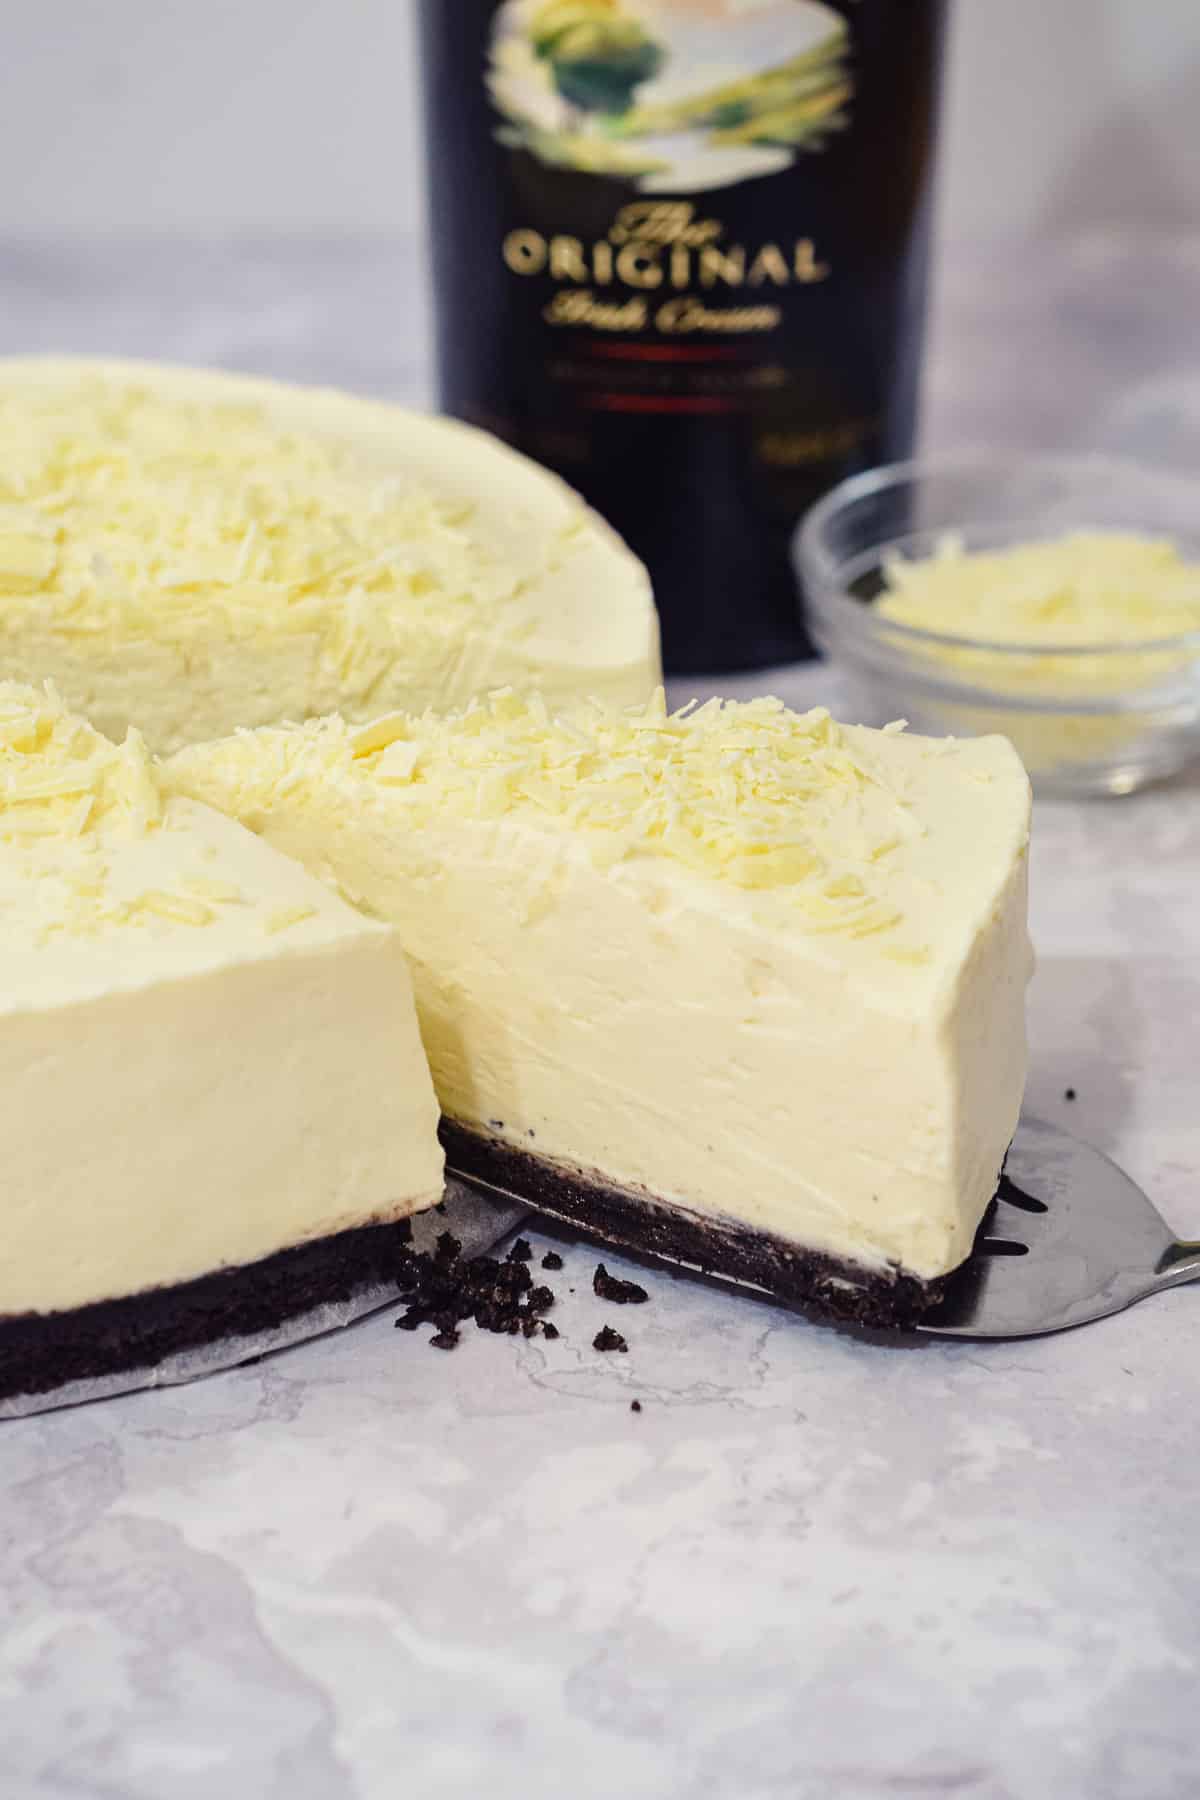 baileys irish cream white chocolate cheesecake with an oreo base and white chocolate shavings.